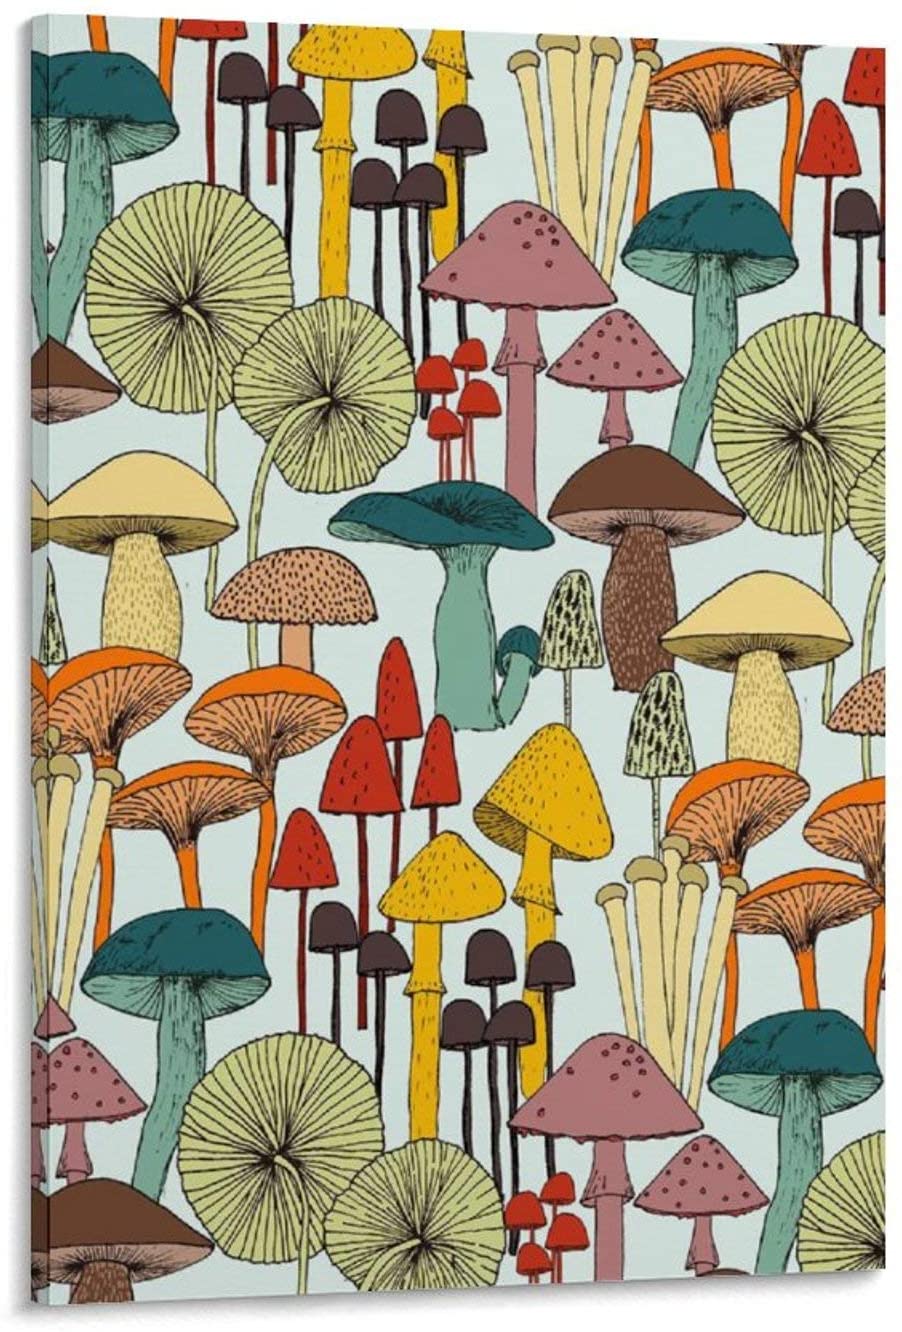 Aesthetic Mushrooms Wallpapers - Wallpaper Cave